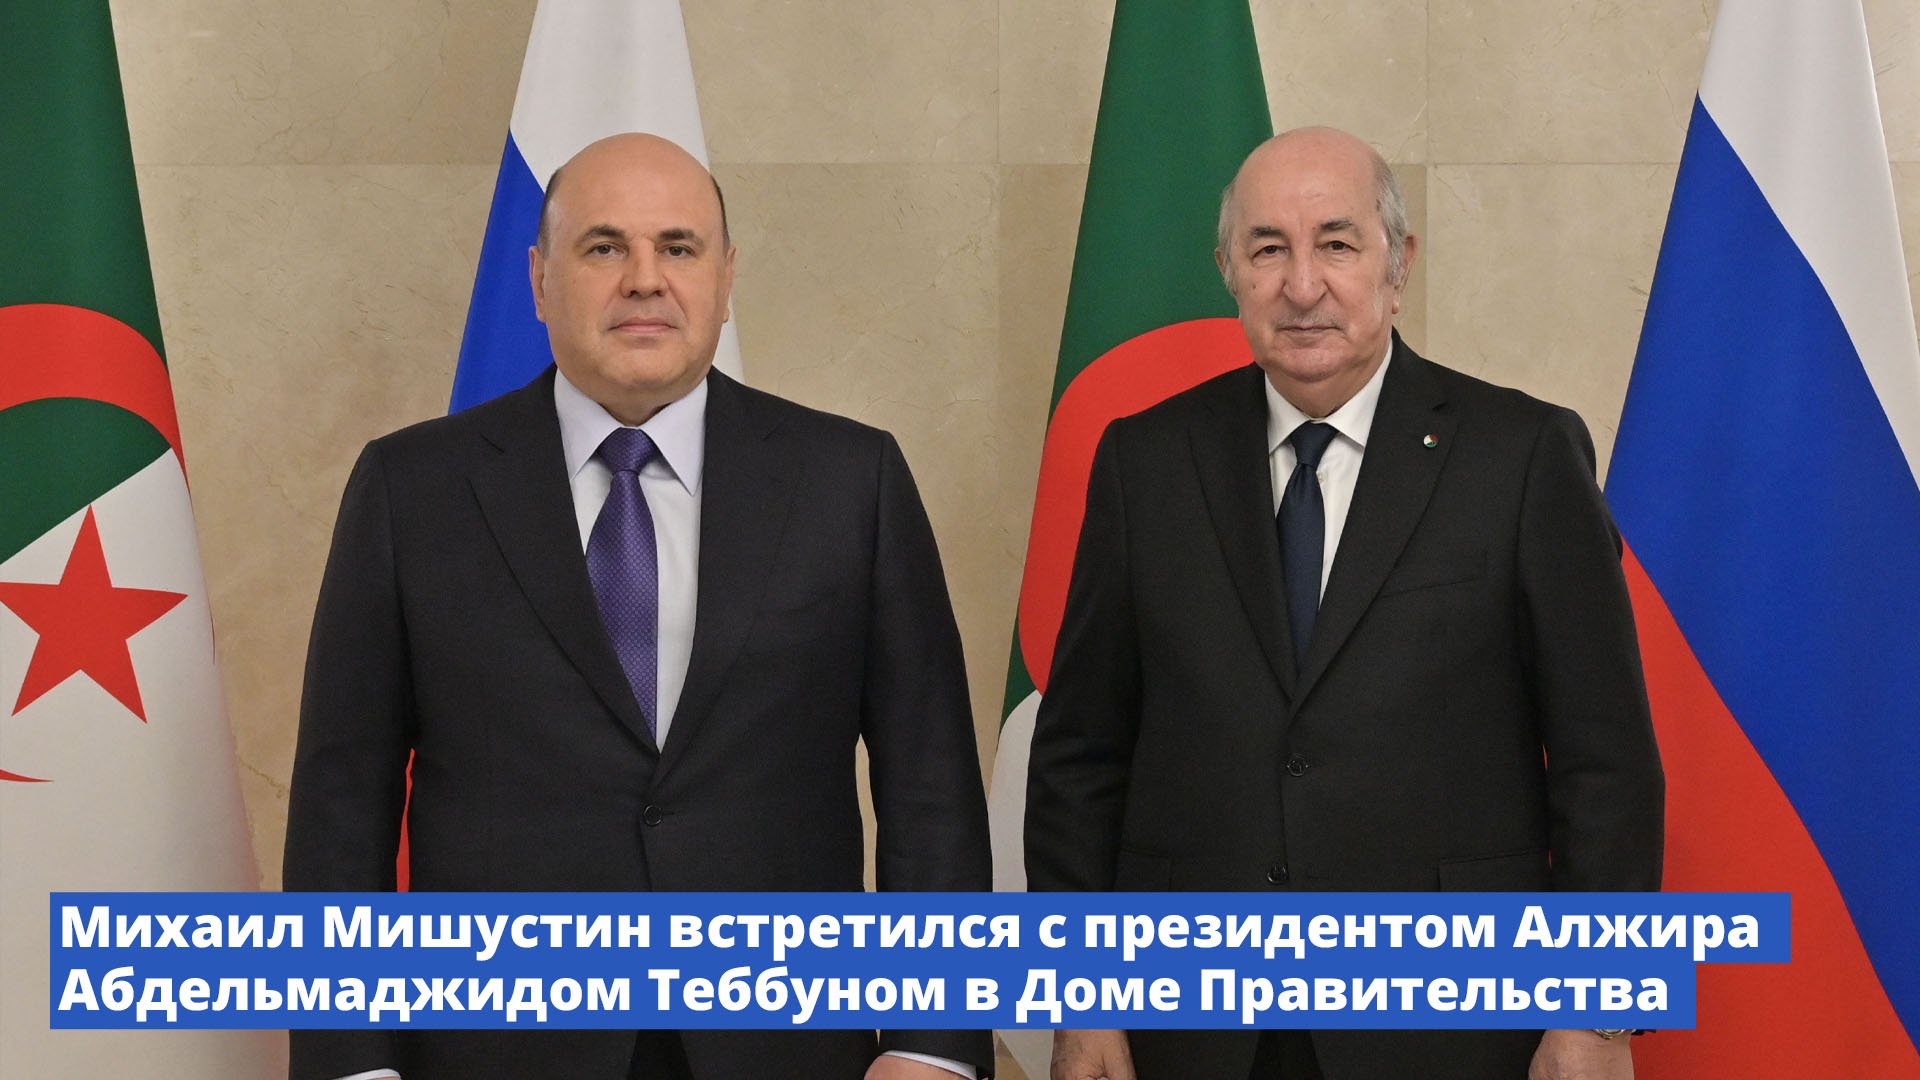 Михаил Мишустин встретился с президентом Алжира Абдельмаджидом Теббуном